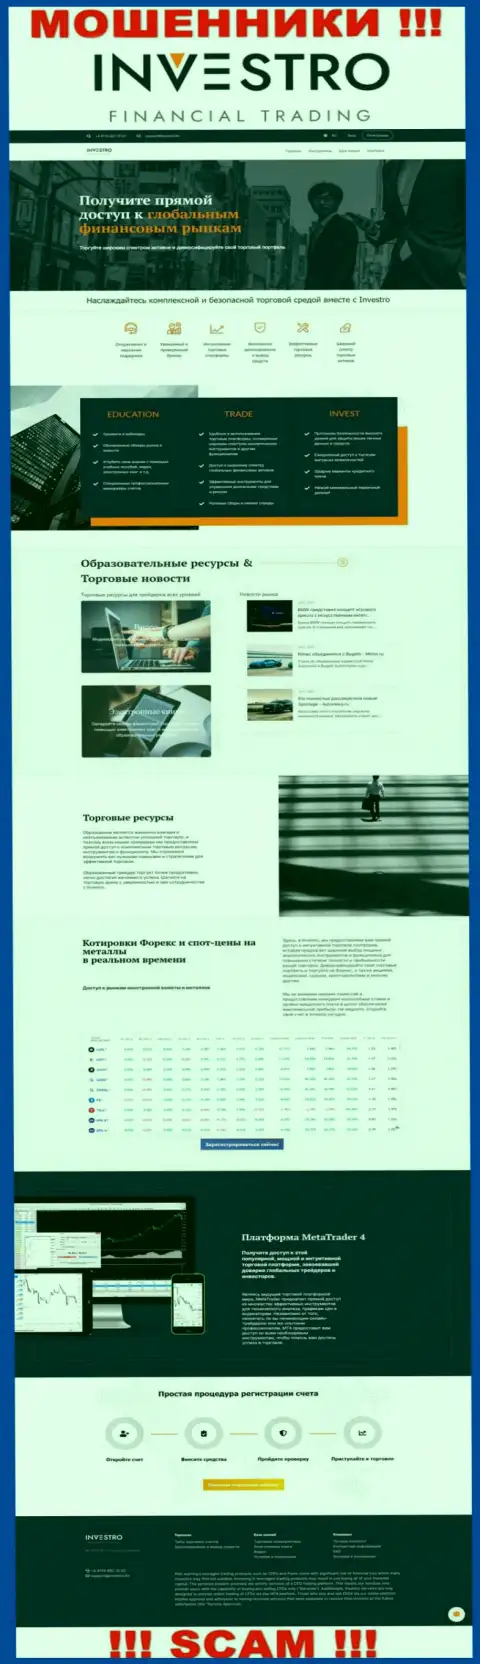 Скрин официального web-сервиса Инвестро - Investro Fm